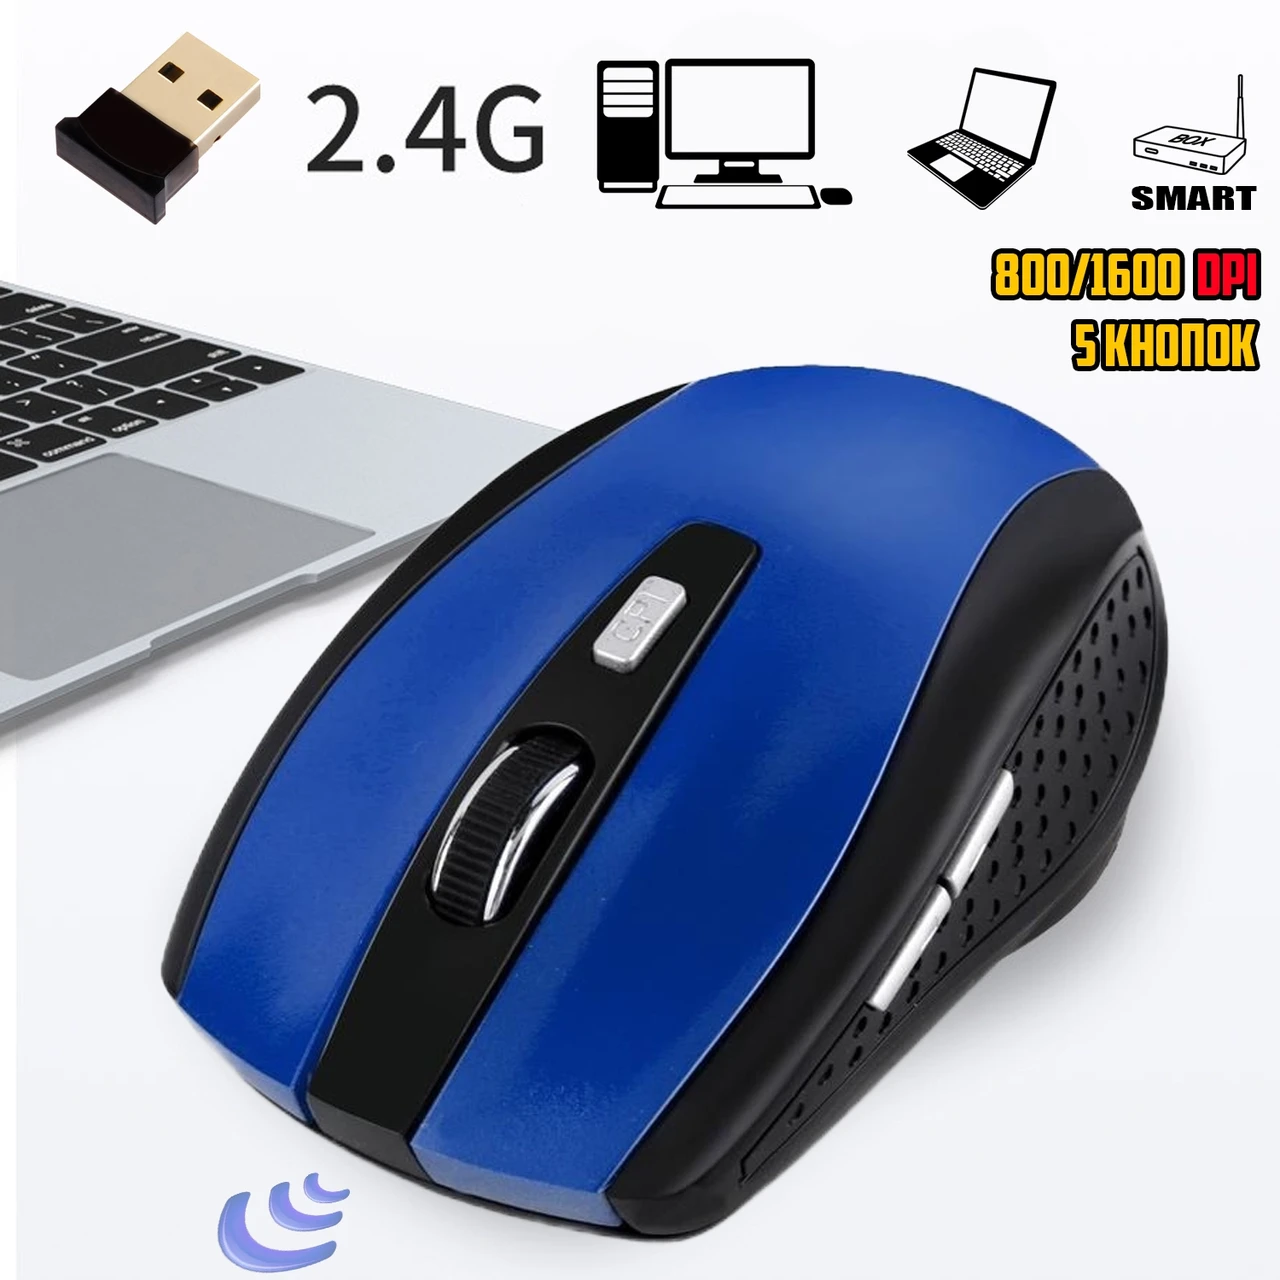 Бездротова миша Mouse Wireless DPI-109 2.4G для ноутбука/комп'ютера, живлення від батарейок Синя IND